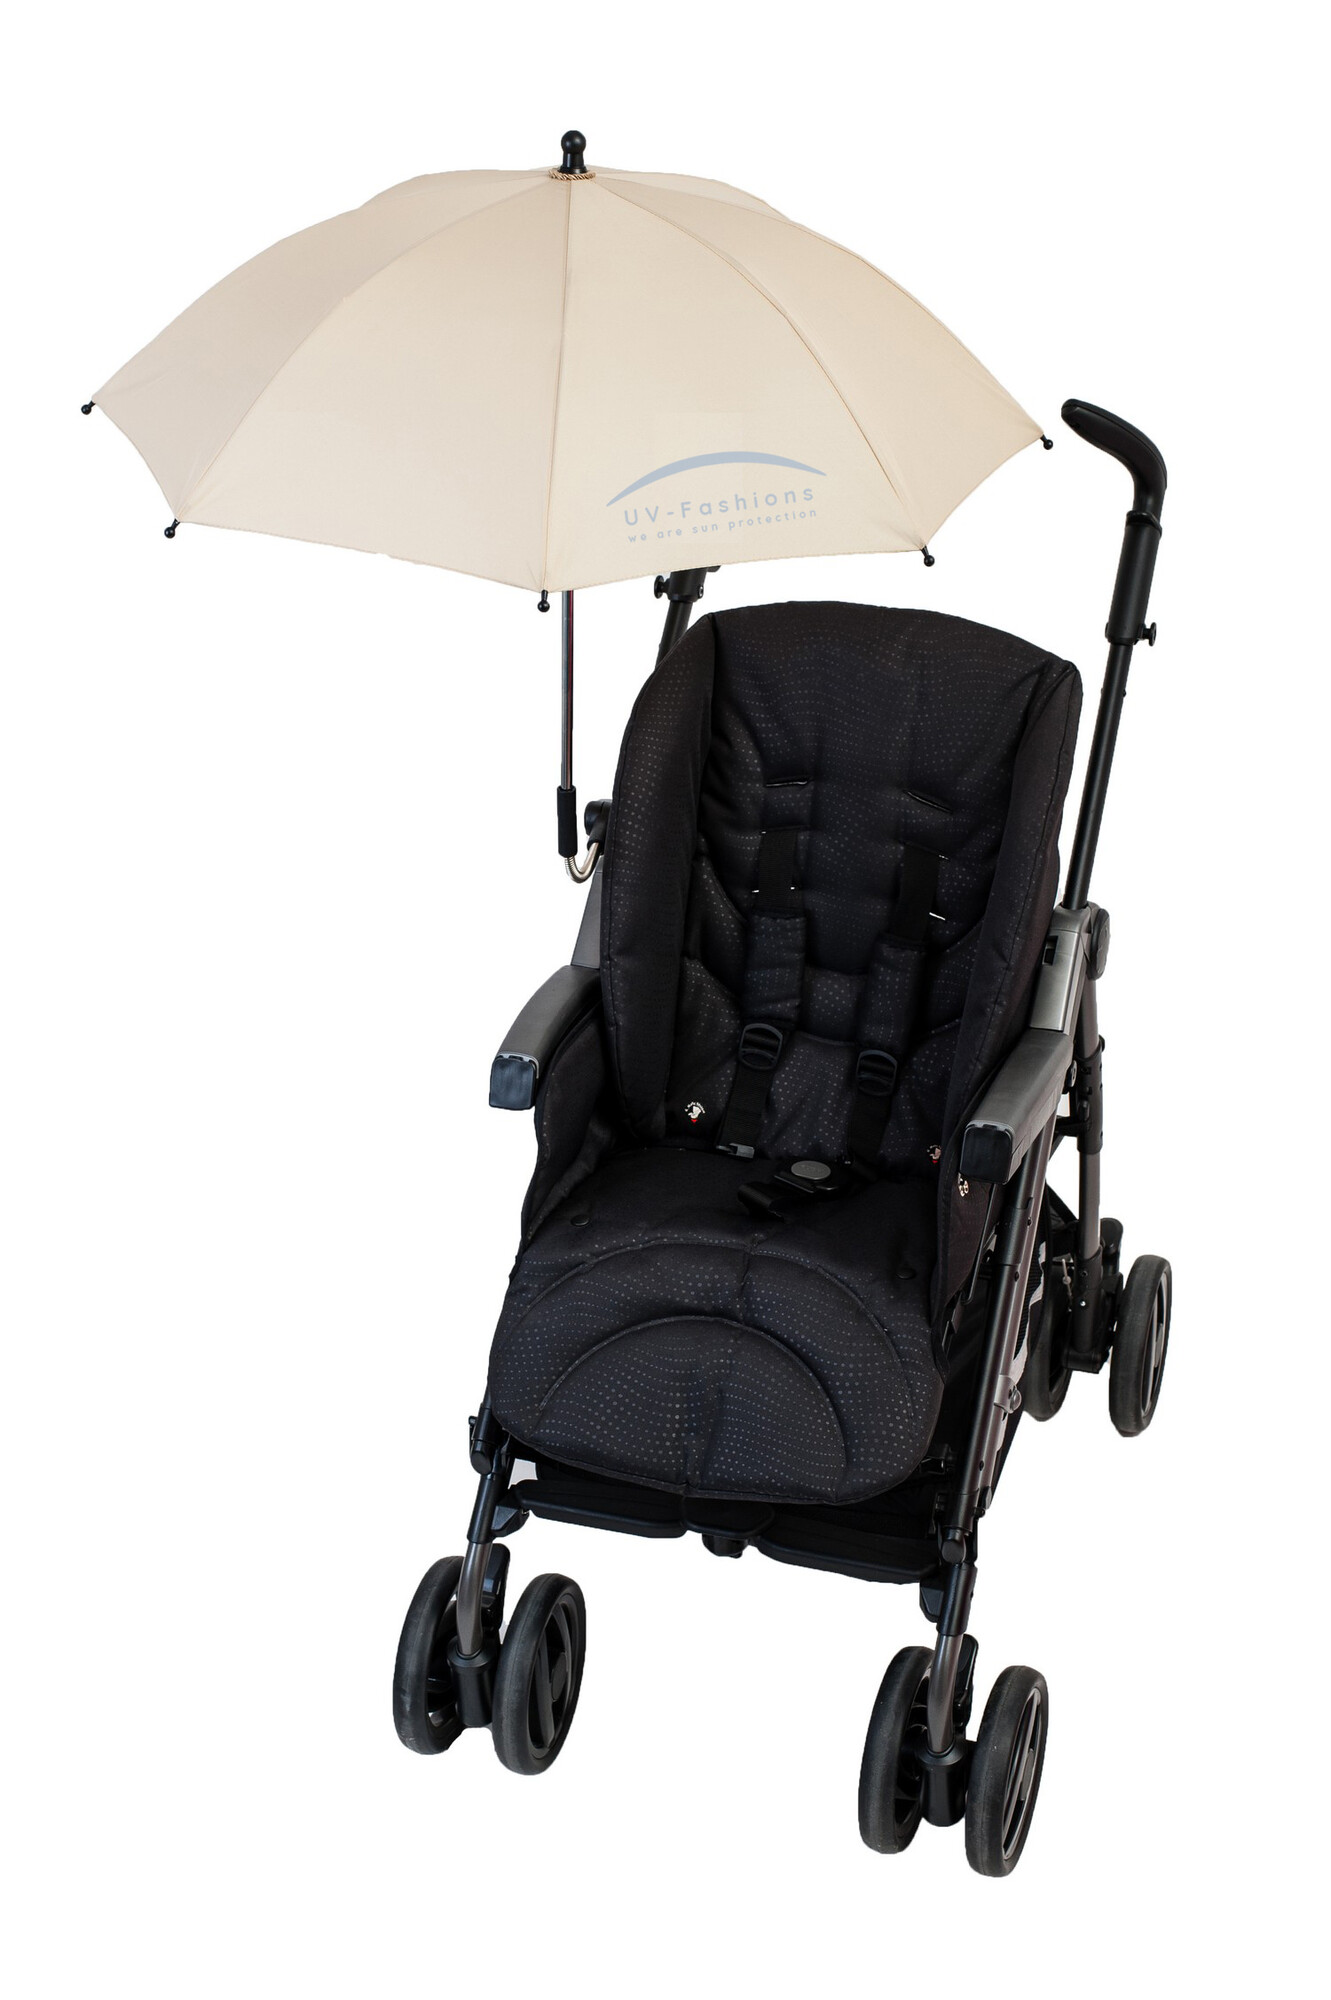 UV-Fashions - Universeller UV-Schirm für Kinderwagen - Beige